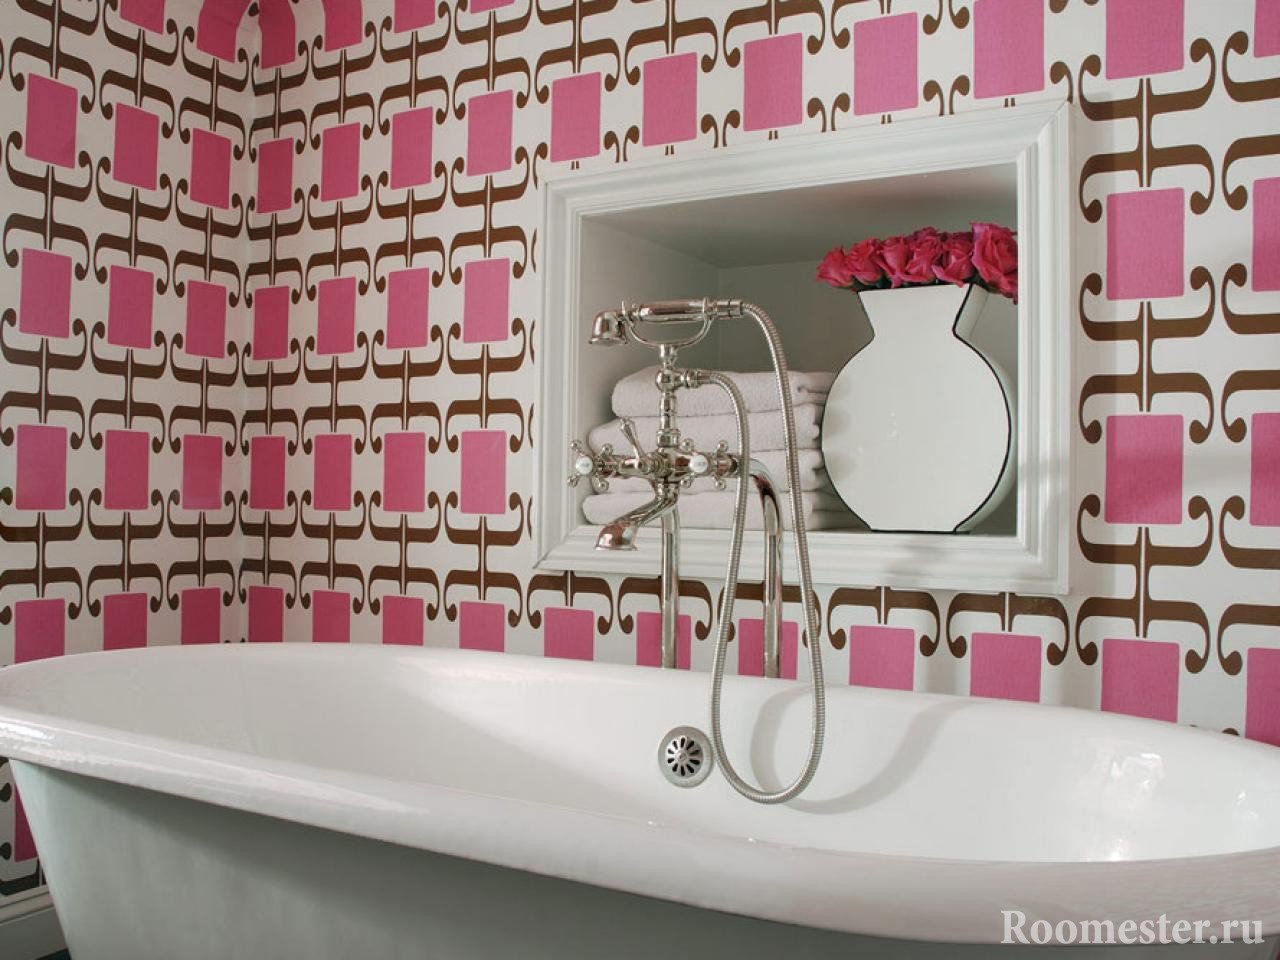 Ванная комната с отделкой стен в розовых цветах